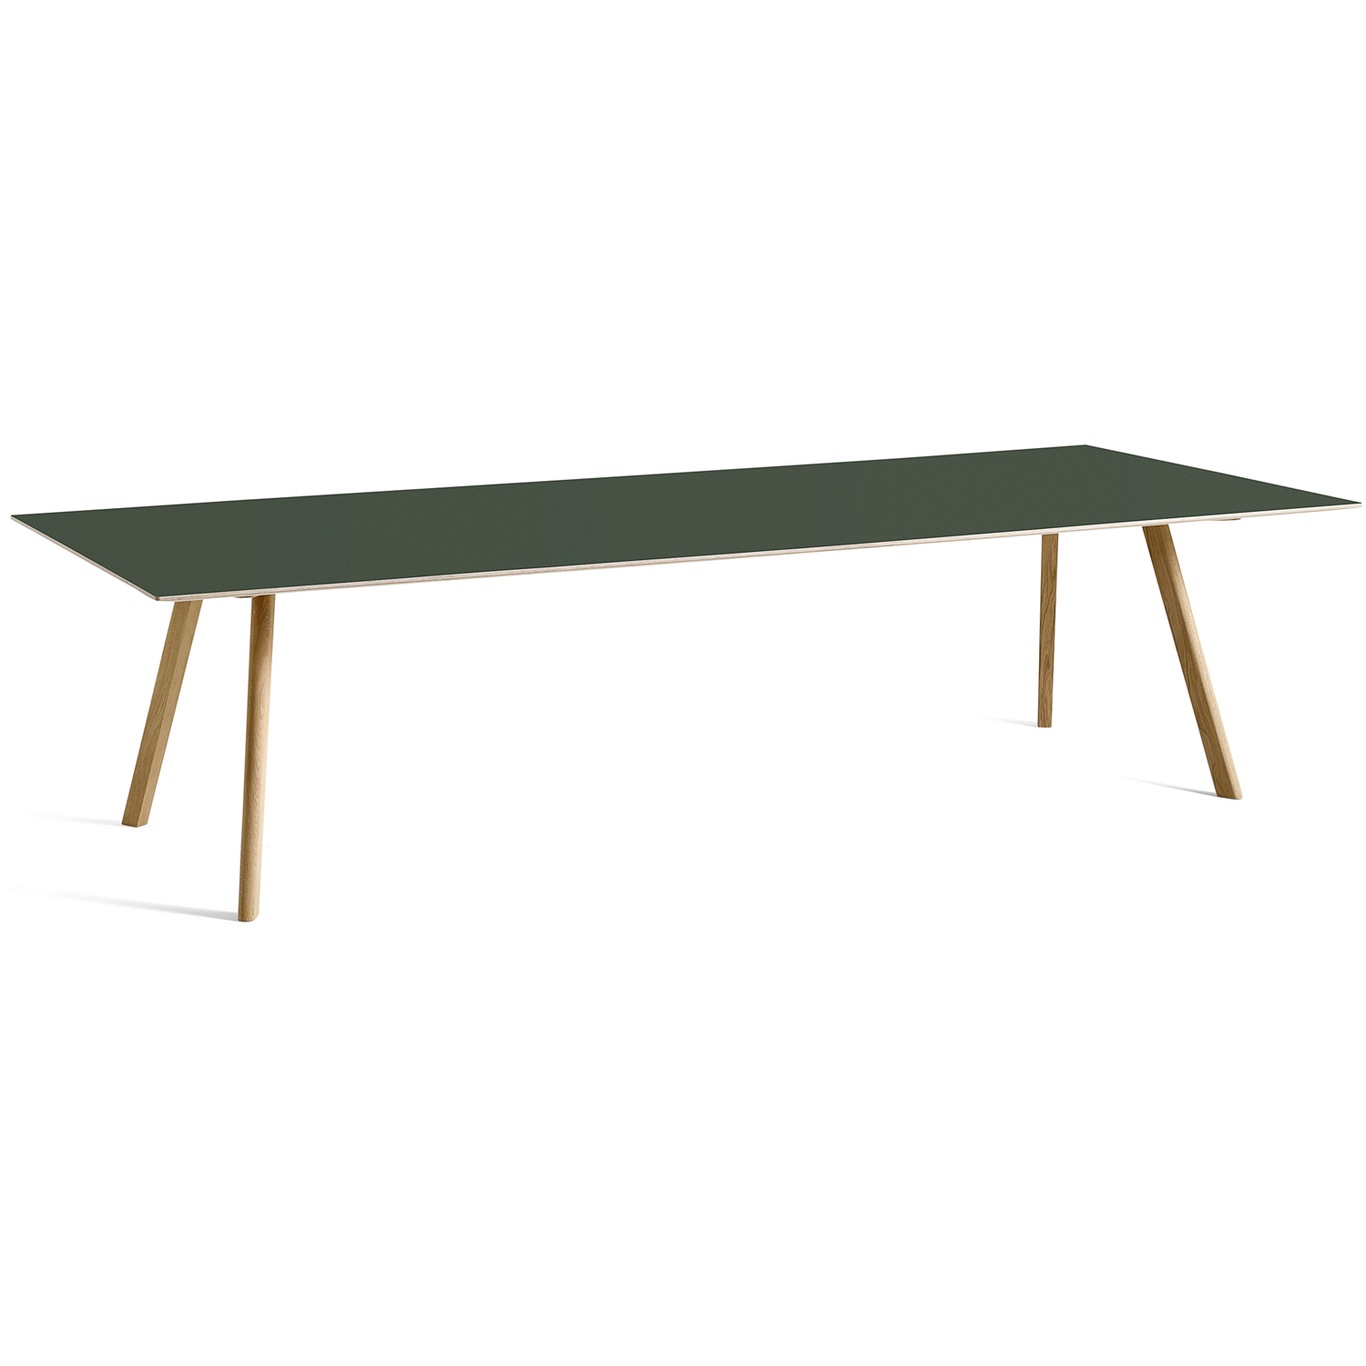 CPH 30 Tisch 300x90 cm, Mit Wasserlack Behandelte Eiche / Grün Linoleum